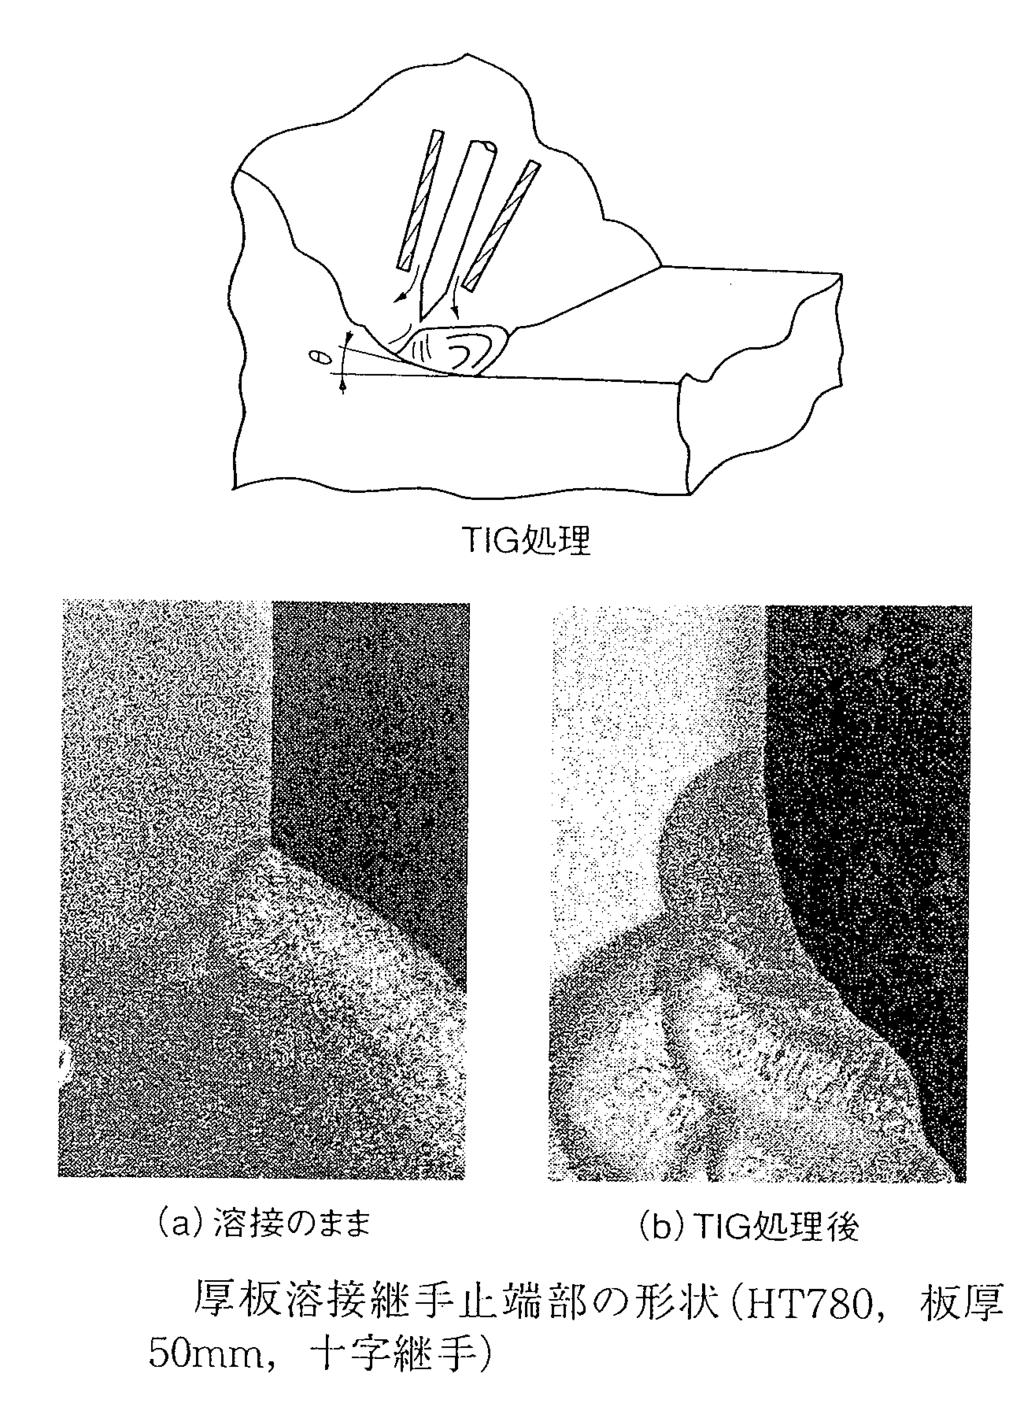 溶接継手余盛止端部の応力集中 楔形止端の応力は無限大 宇佐美, 志田, 圧力技術,20-2 (1982) 42-50 9